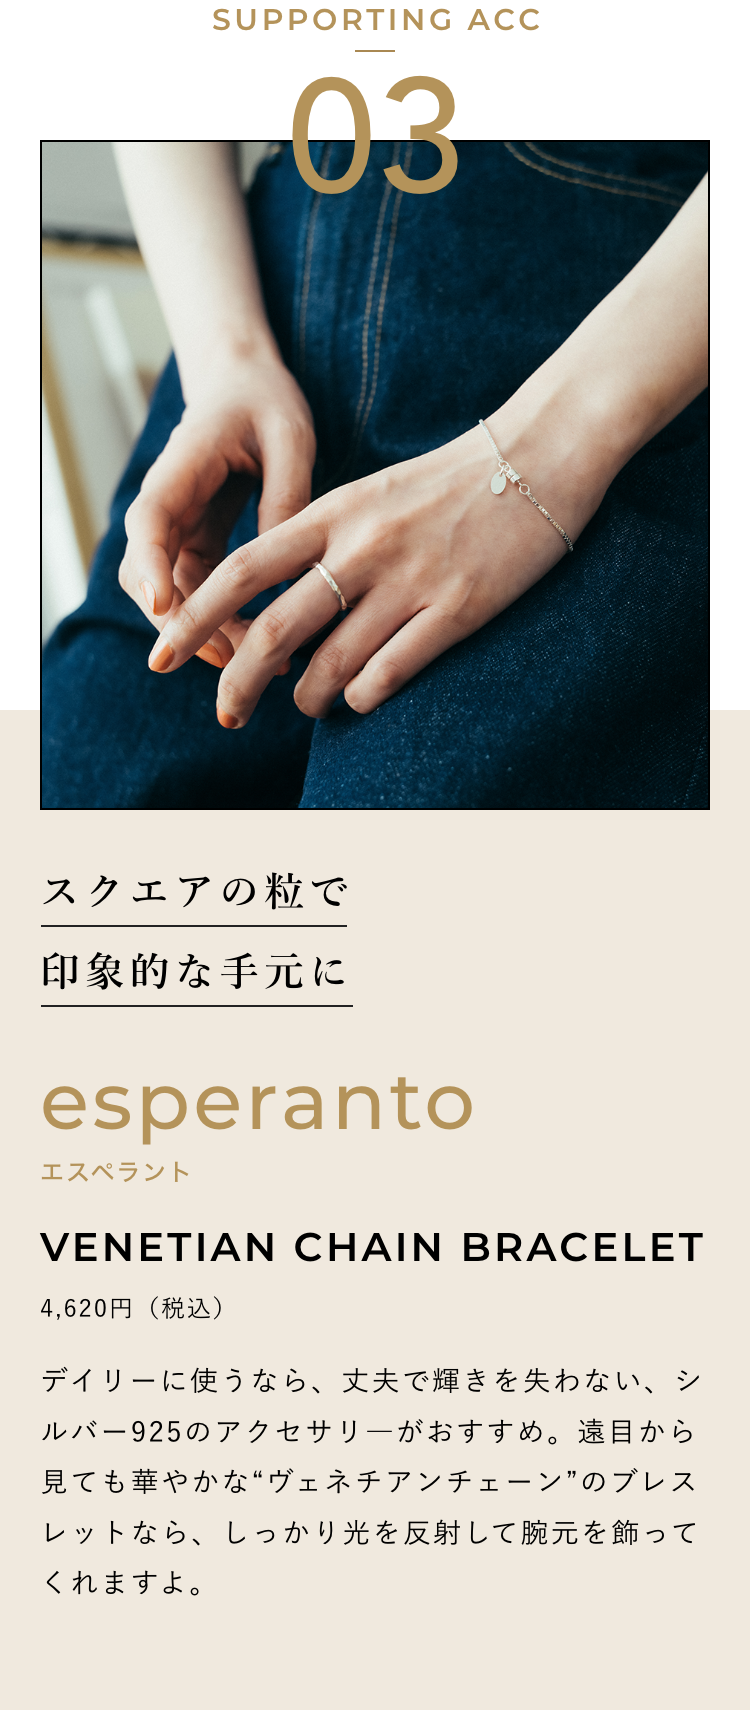 スクエアの粒で印象的な手元に esperanto エスペラント VENETIAN CHAIN BRACELET 